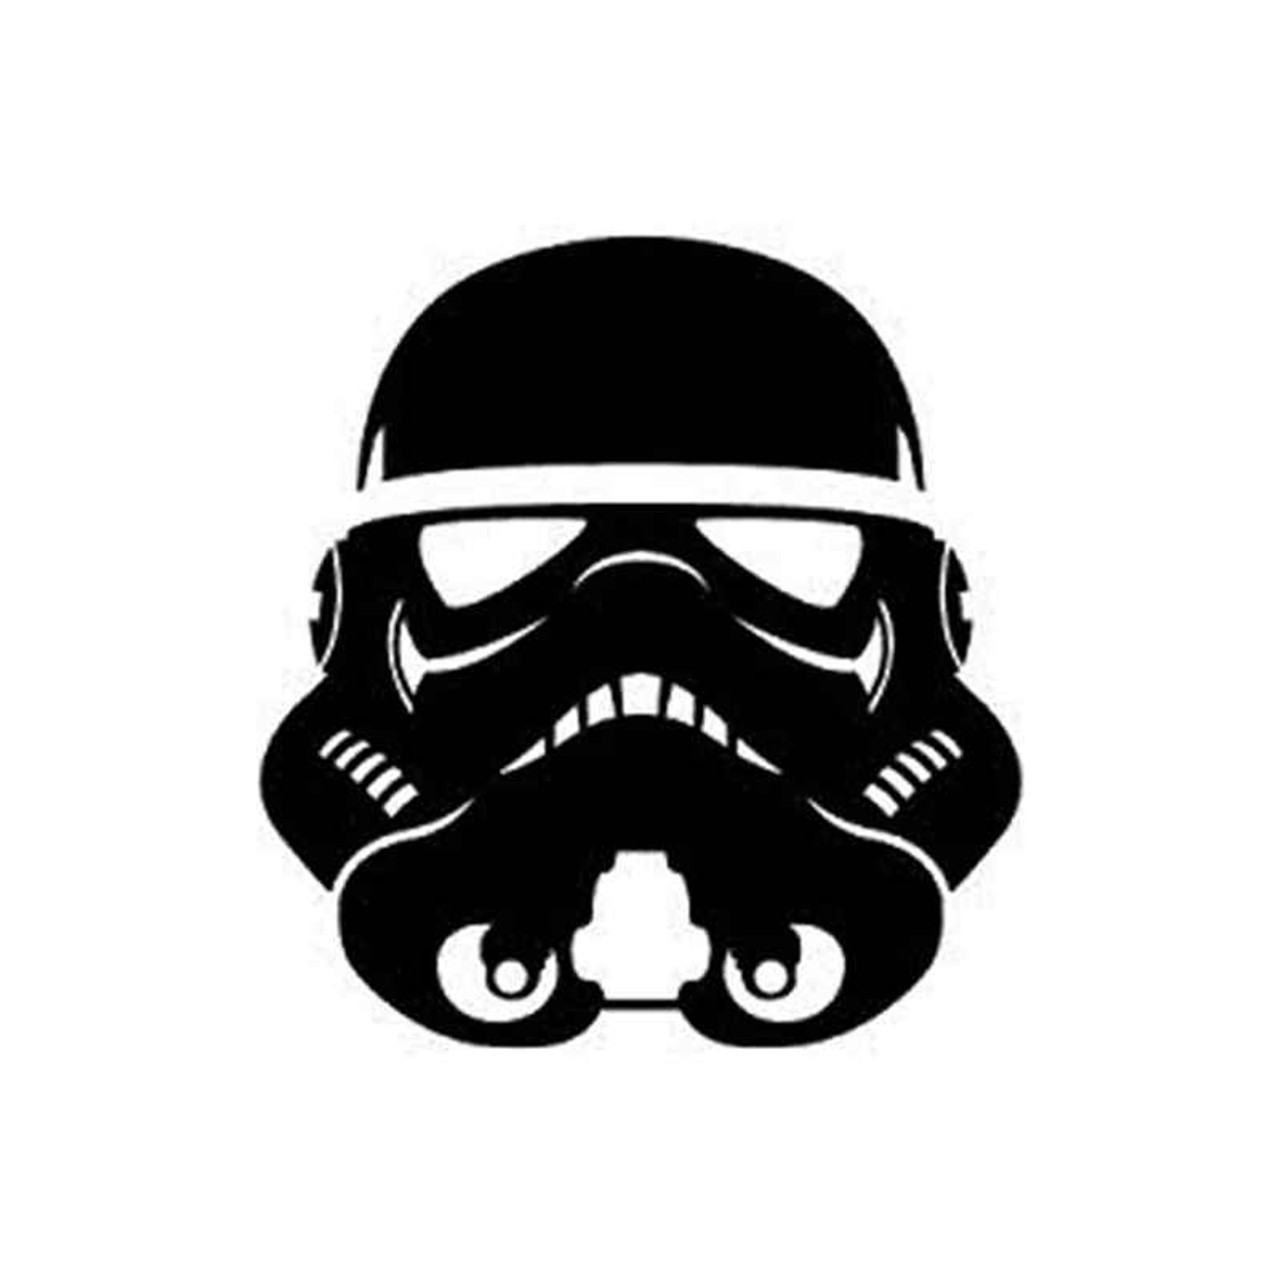 stormtrooper vinyl decal